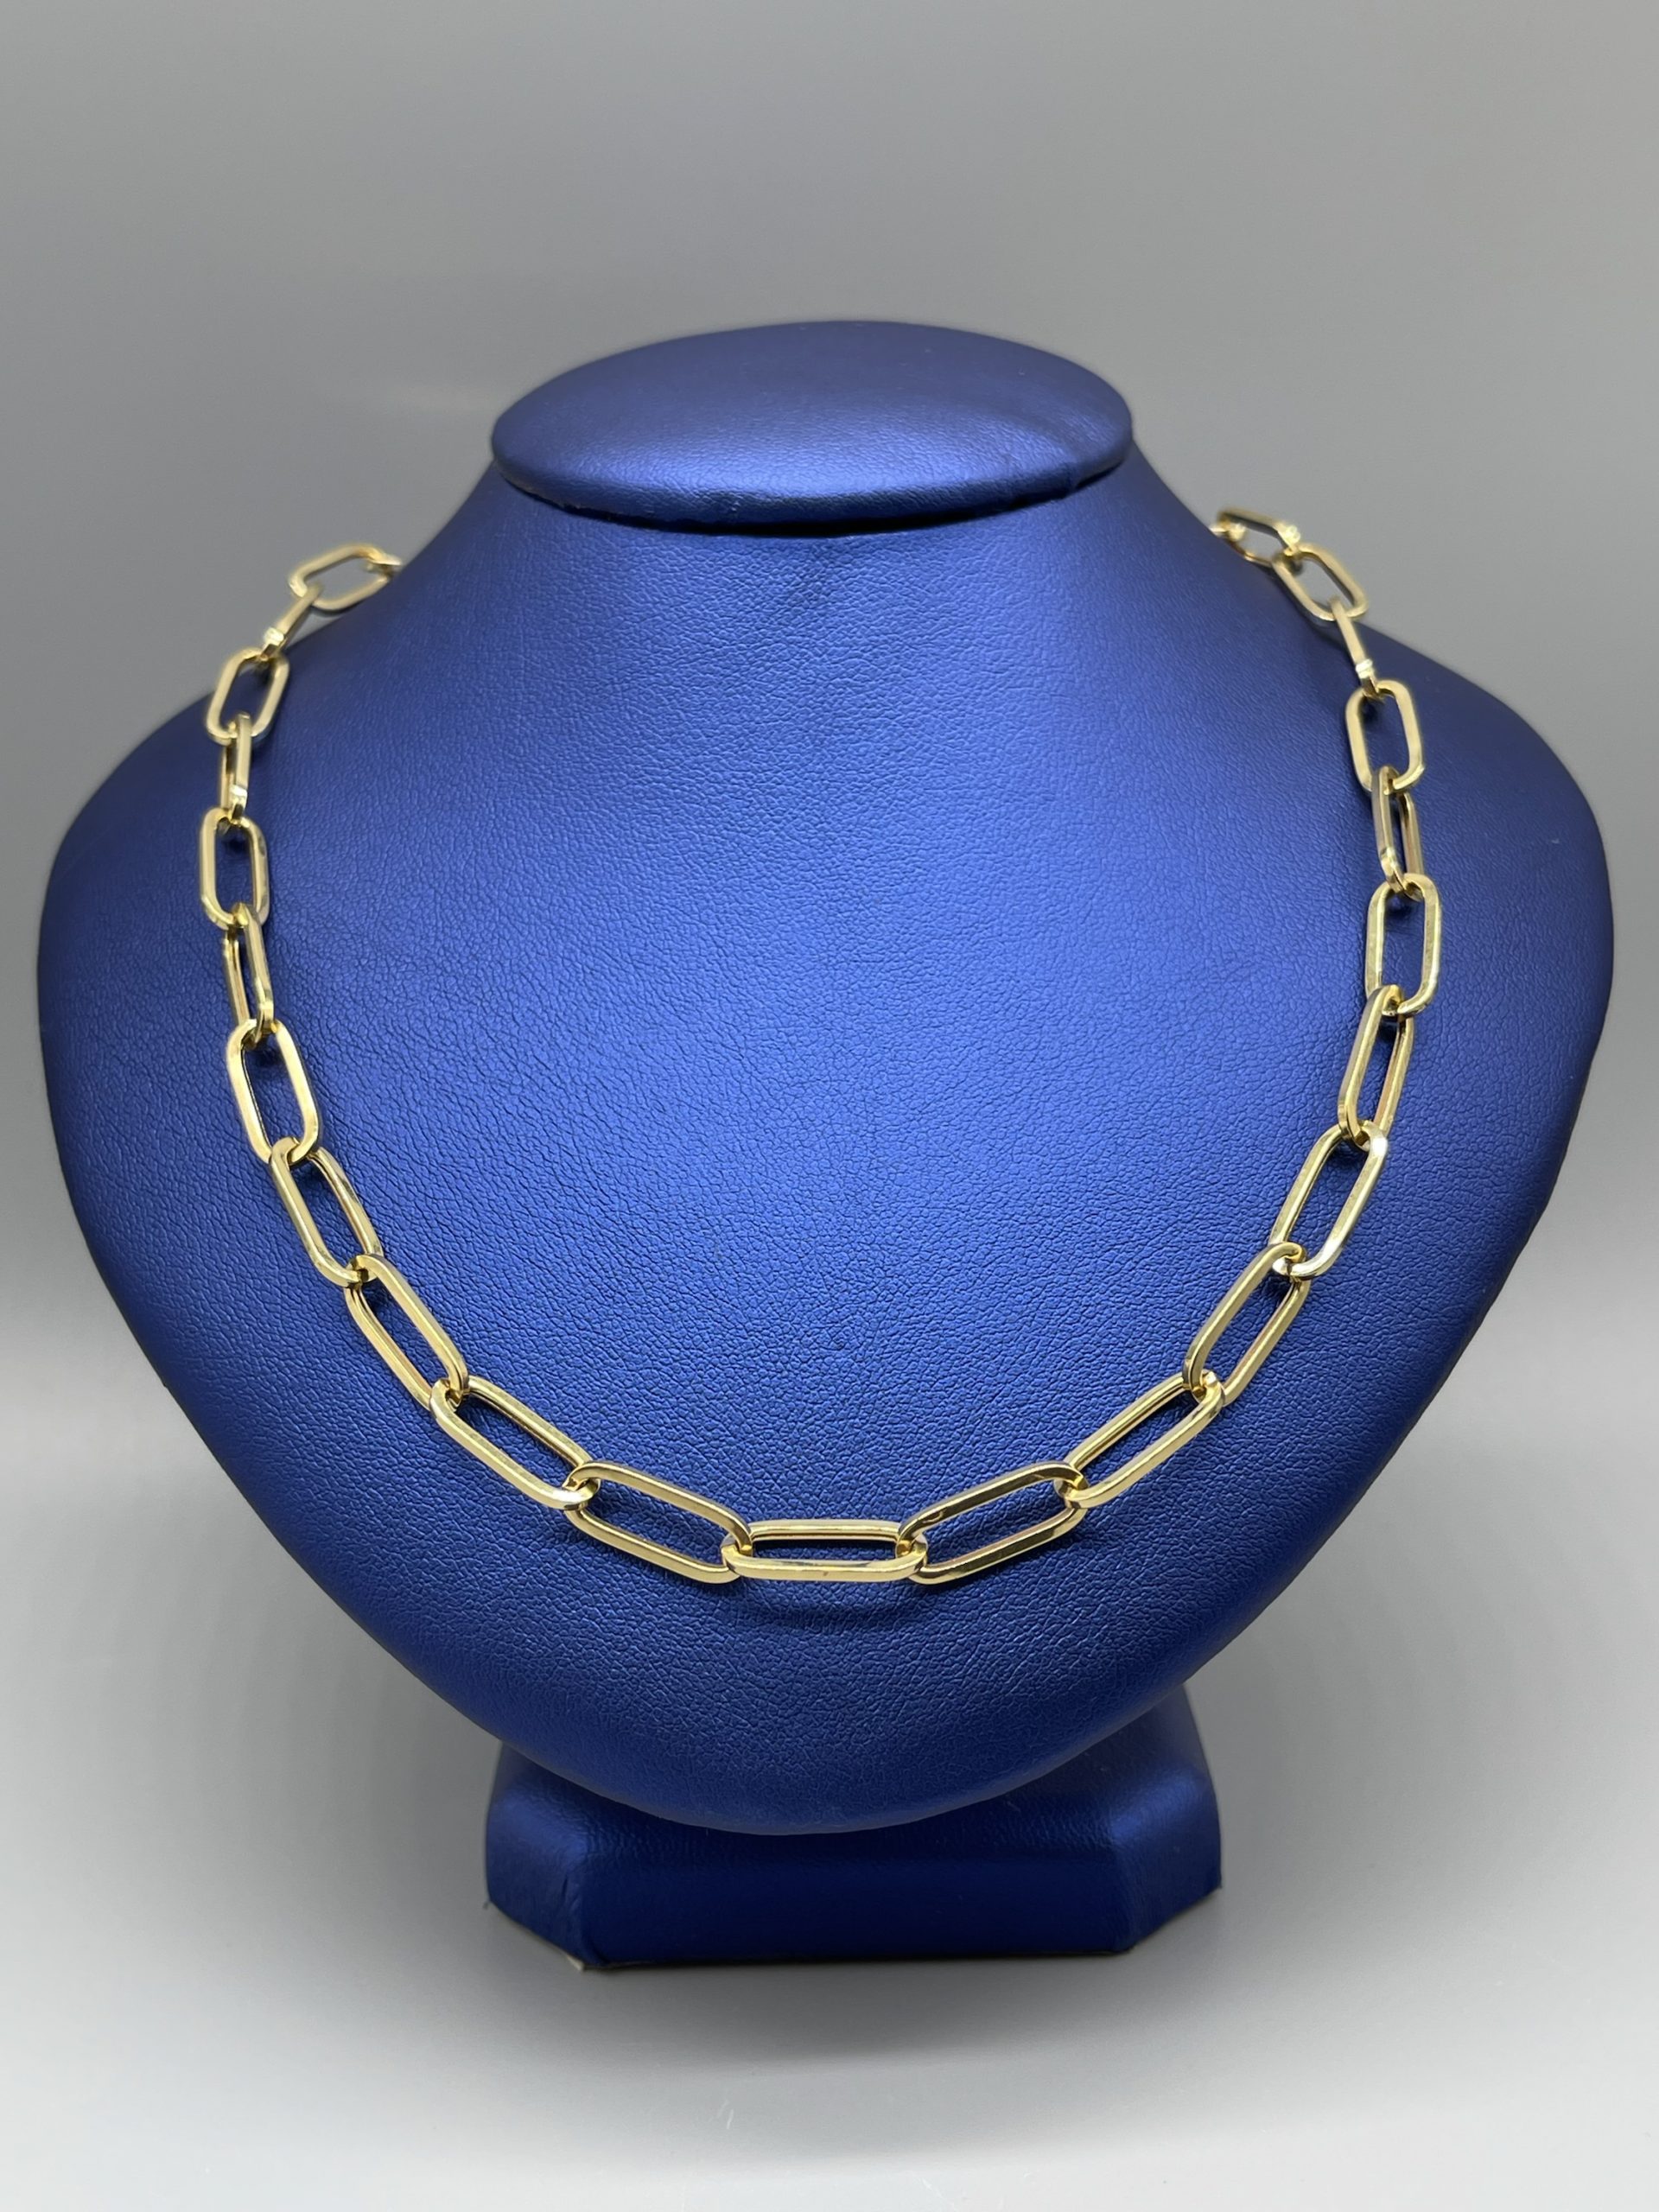 Thicker Lola Chain | Chain, Unique jewelry designs, Gold link chain